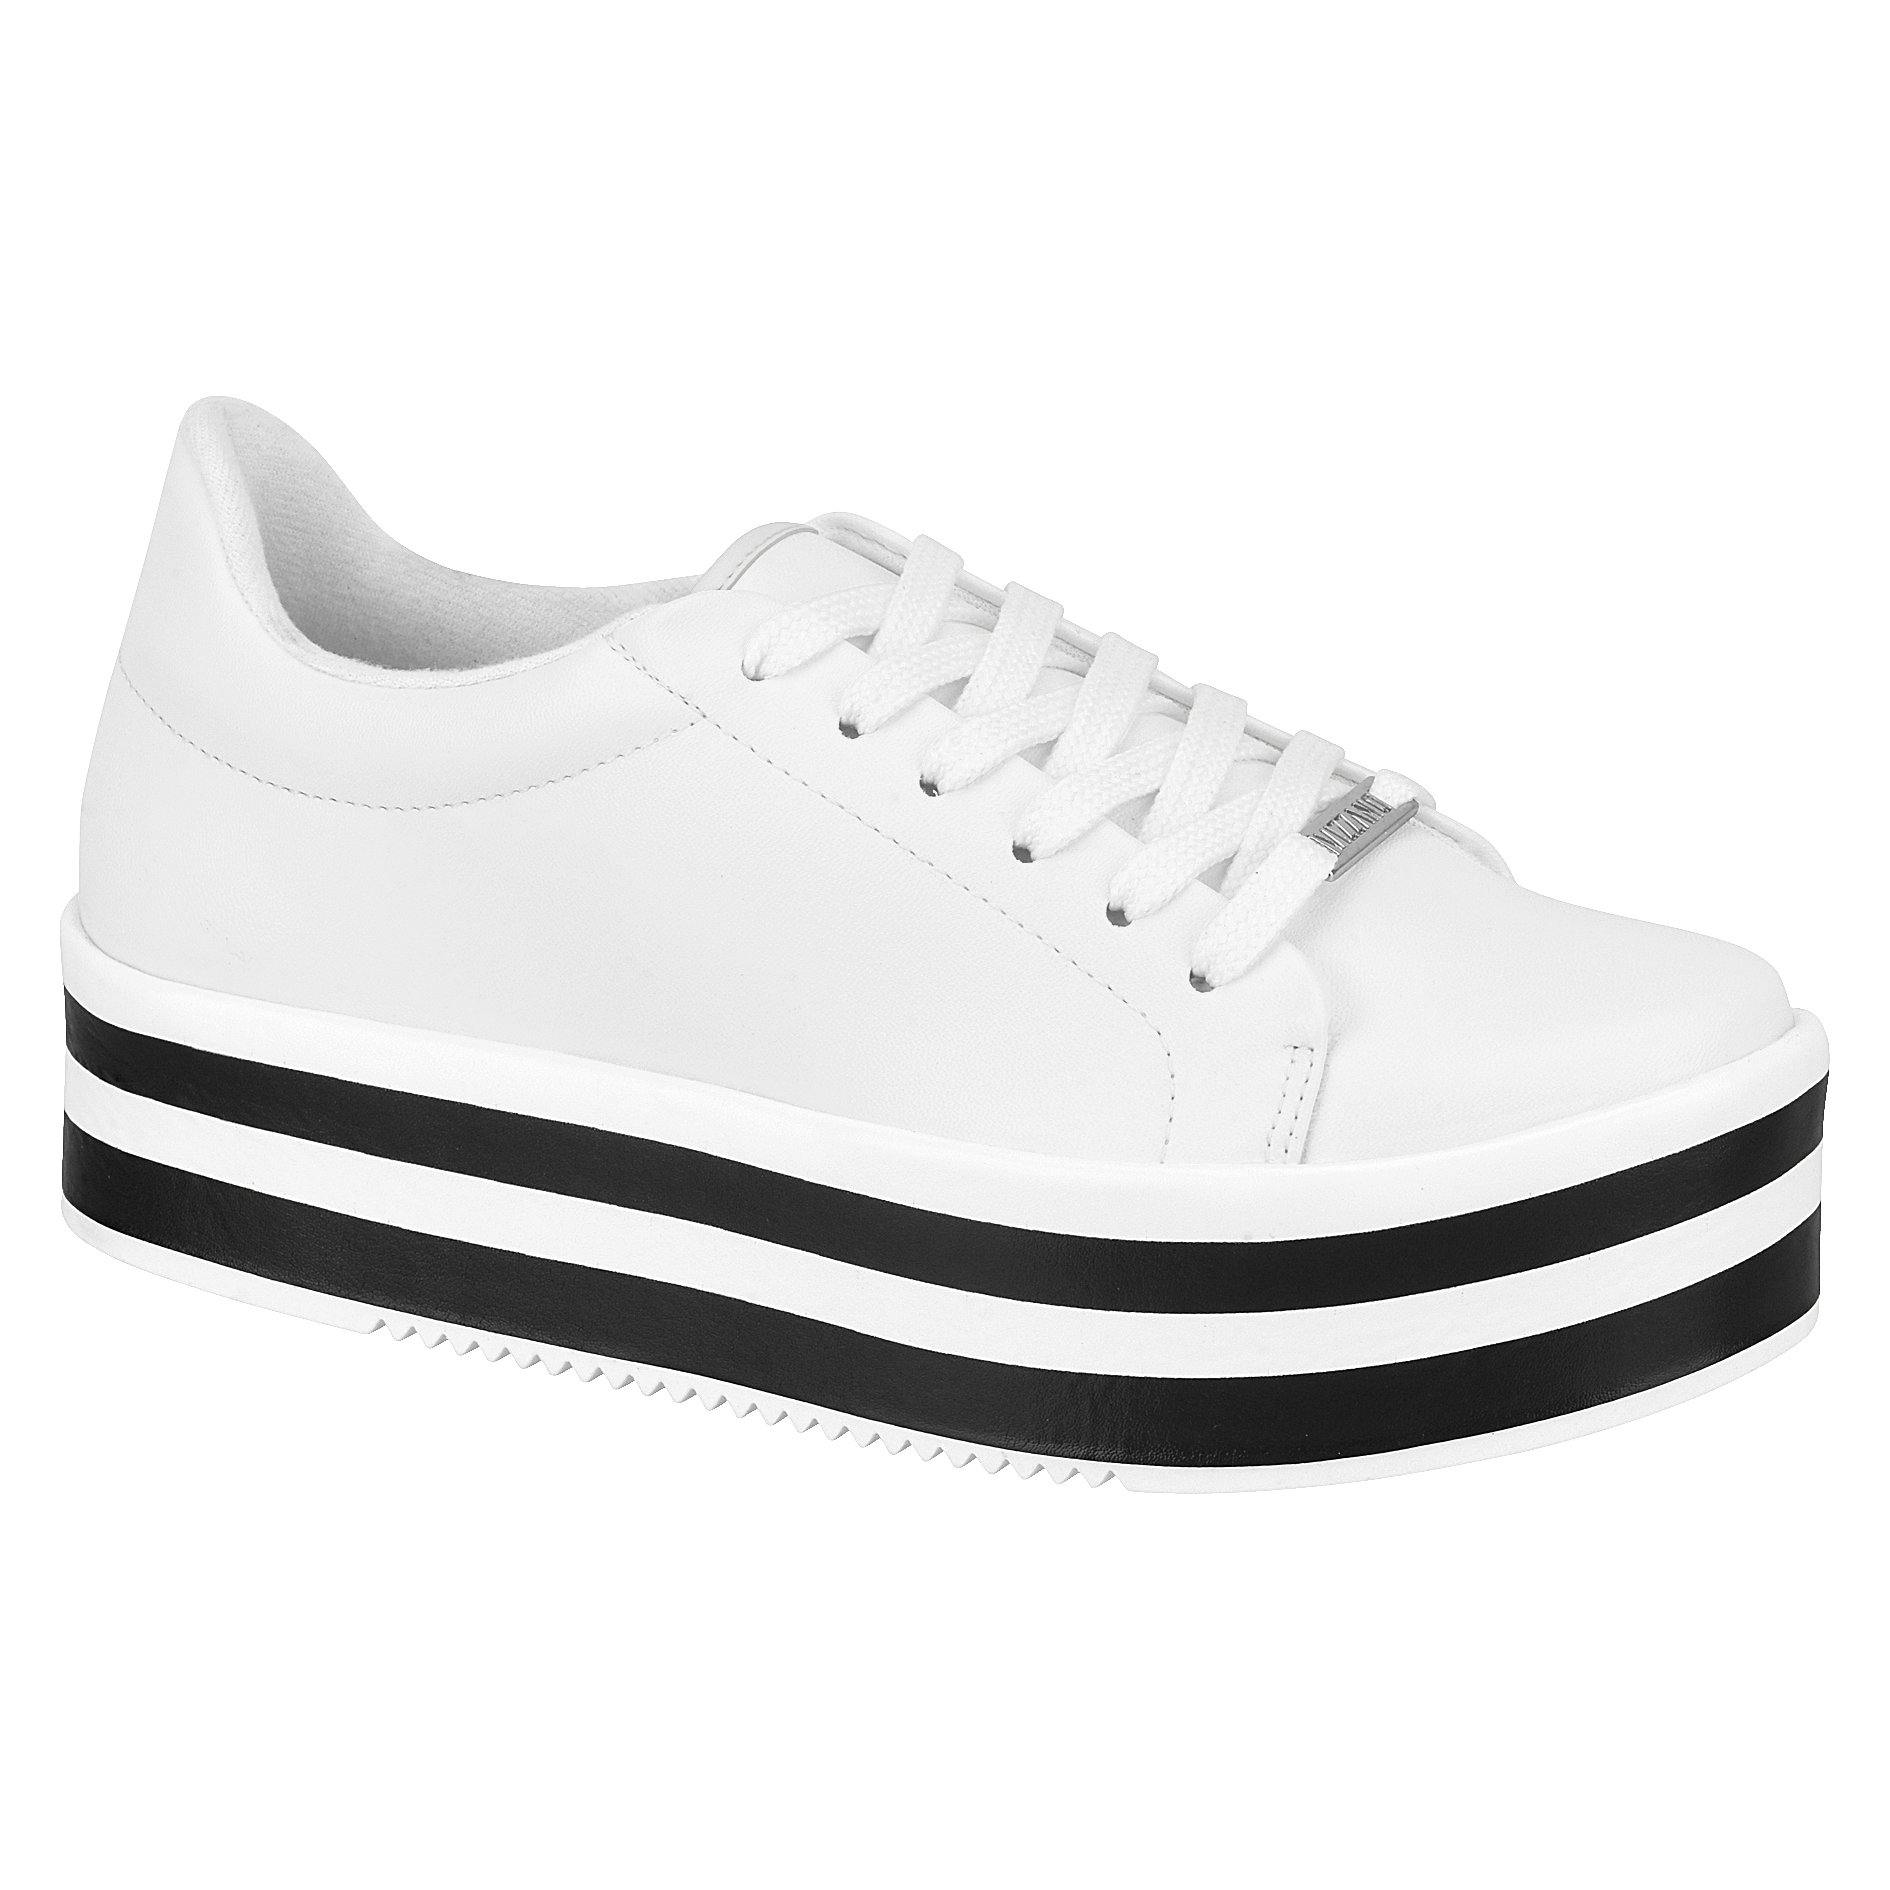 Vizzano 1298-100 Stripy Sole Sneaker in White Napa - Charley Boutique